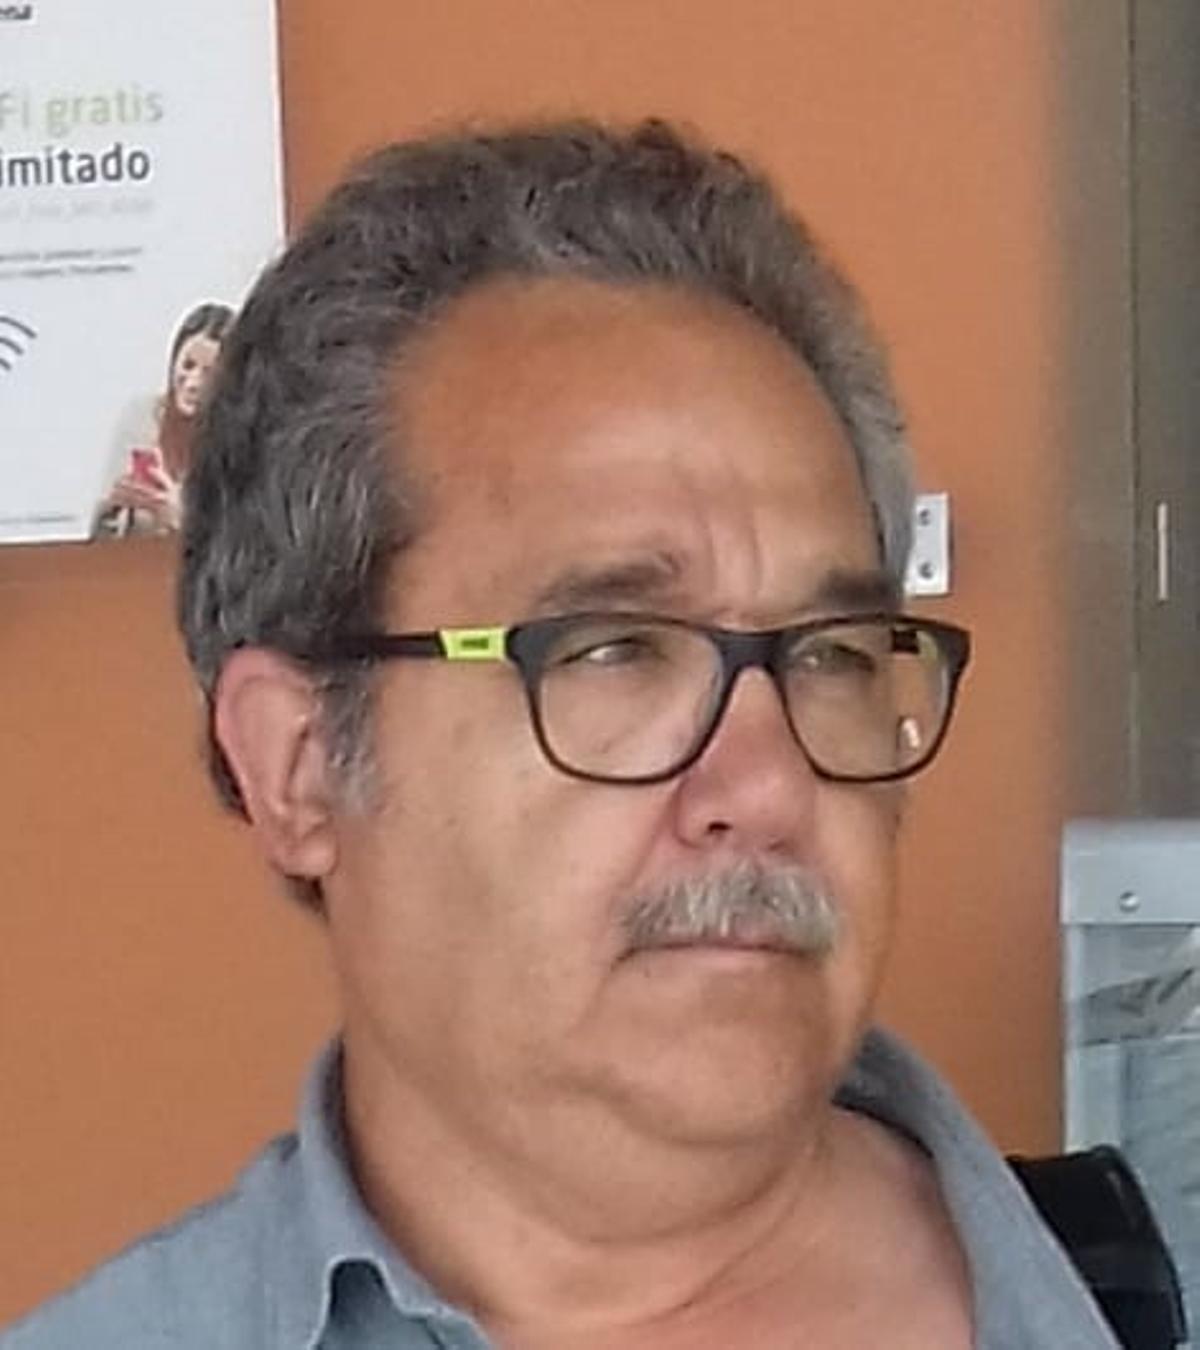 José Manuel Prieto, traumatólogo fallecido por COVID